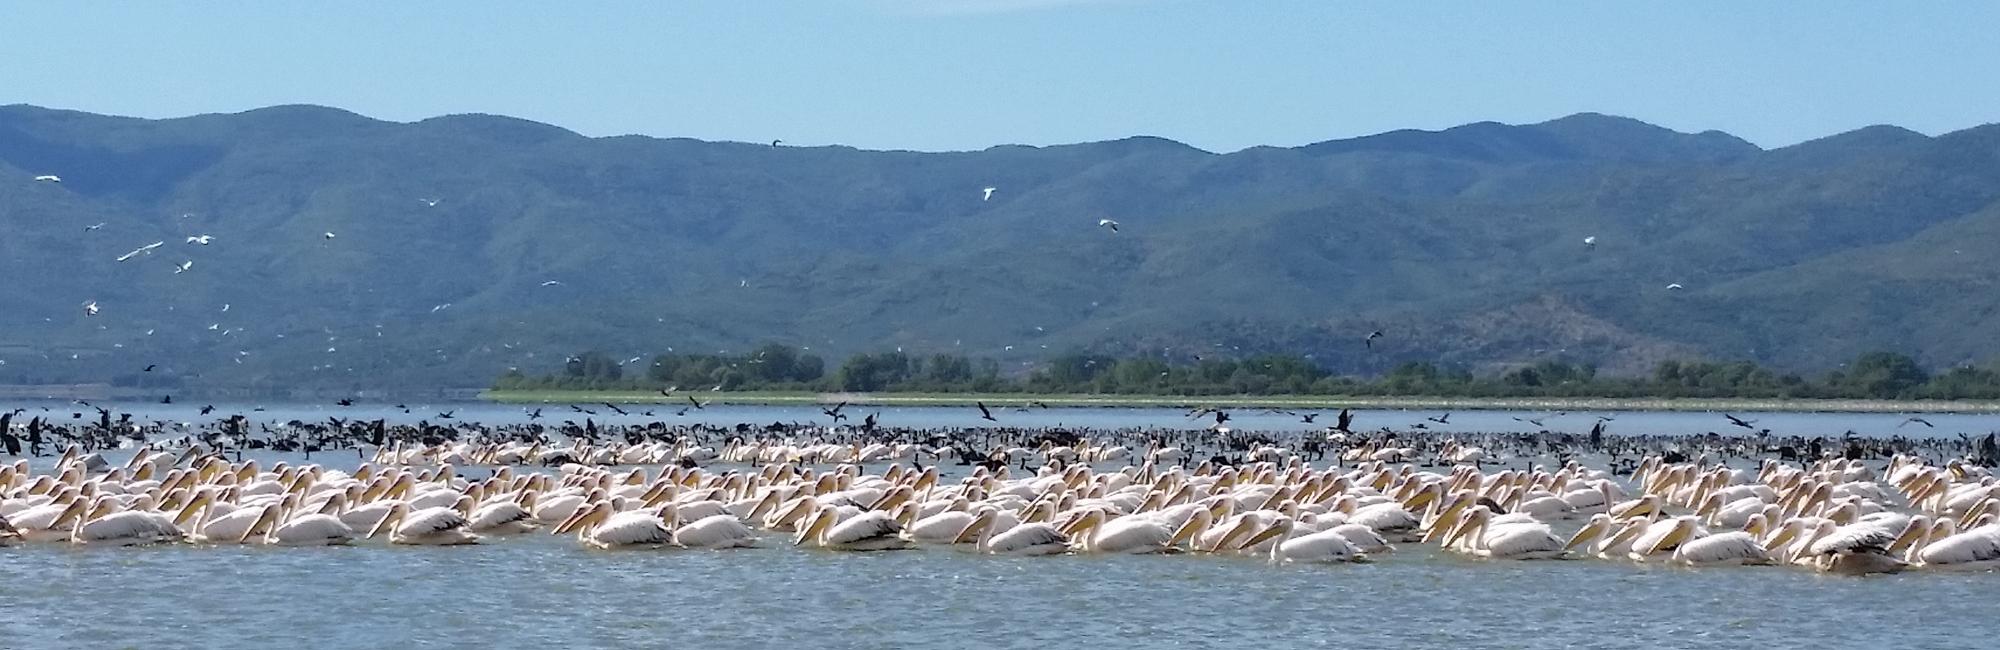 Flamingos_Kerkini